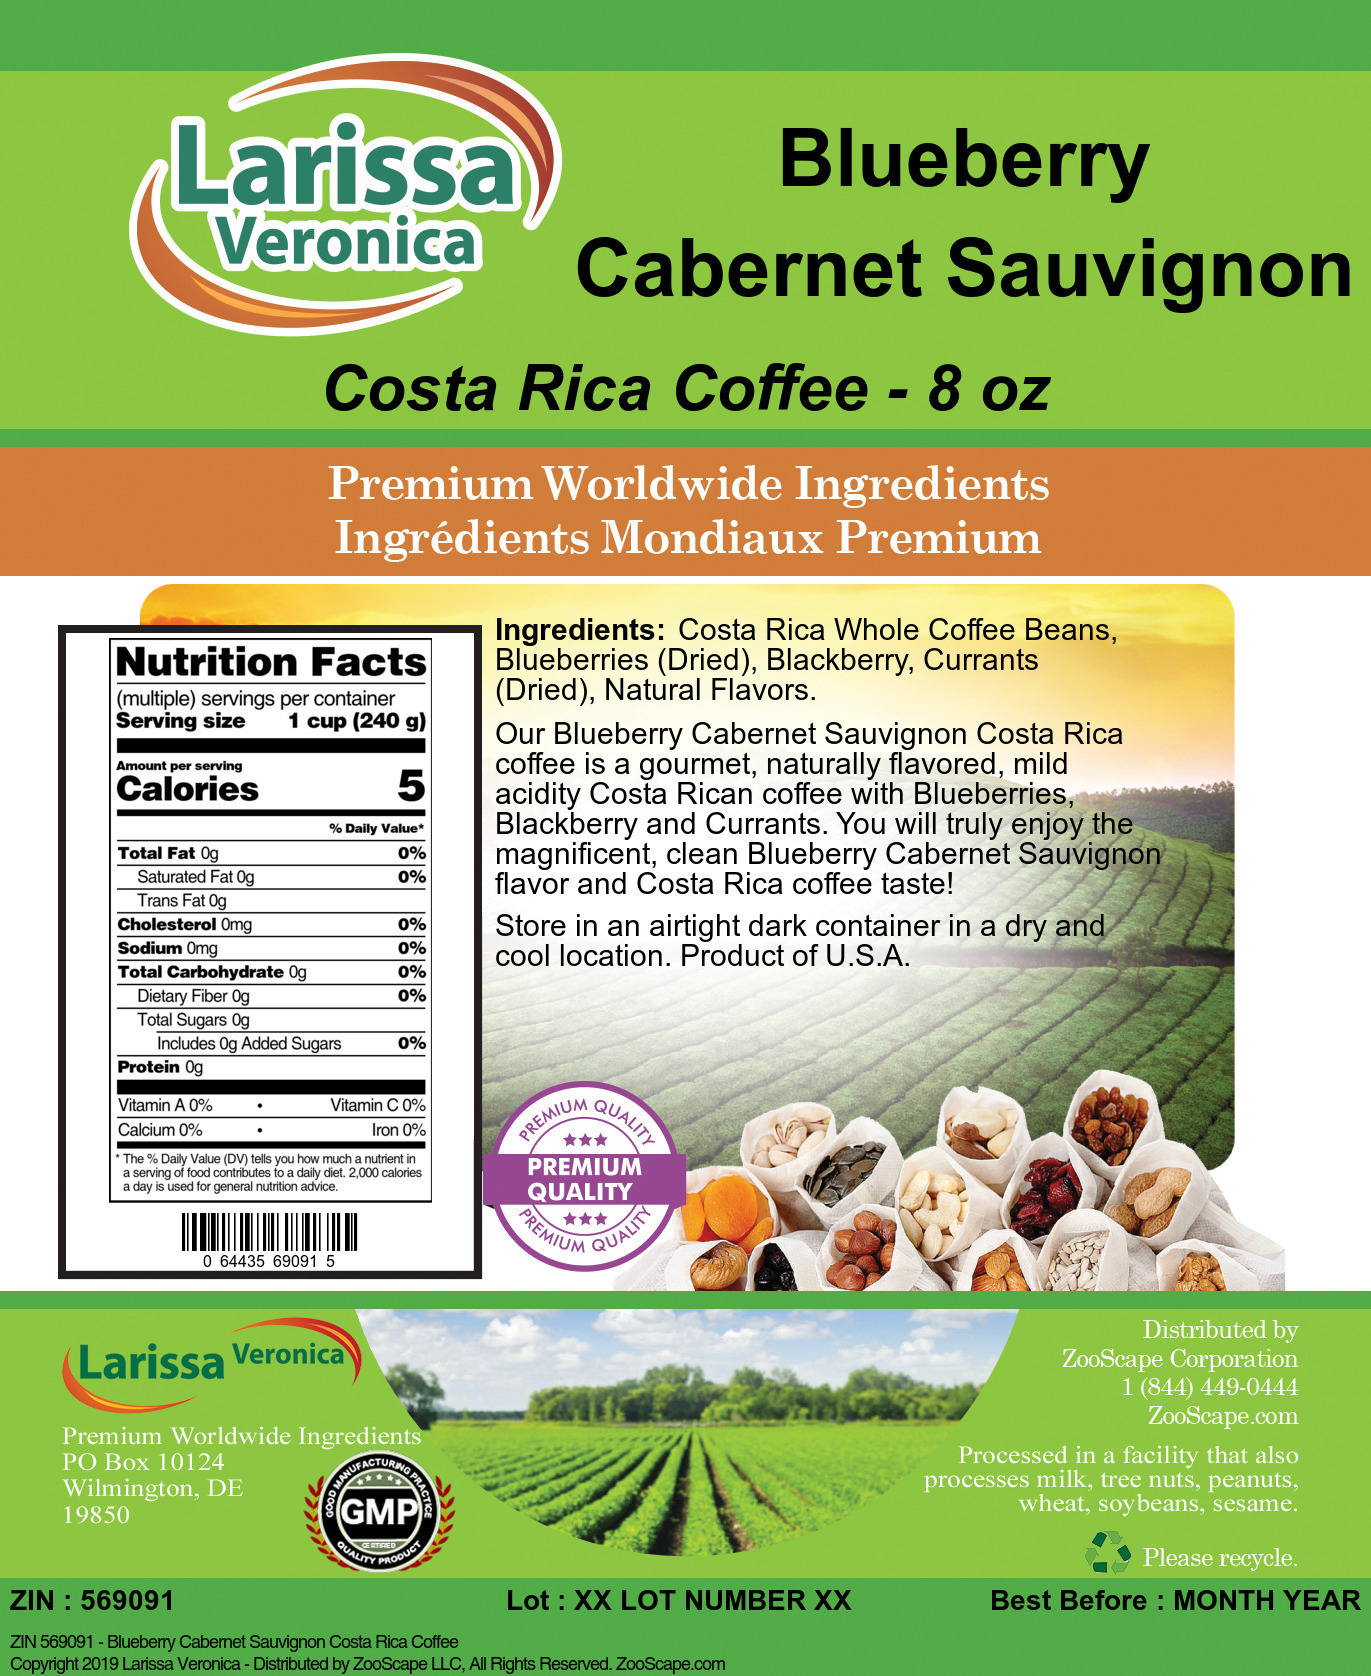 Blueberry Cabernet Sauvignon Costa Rica Coffee - Label